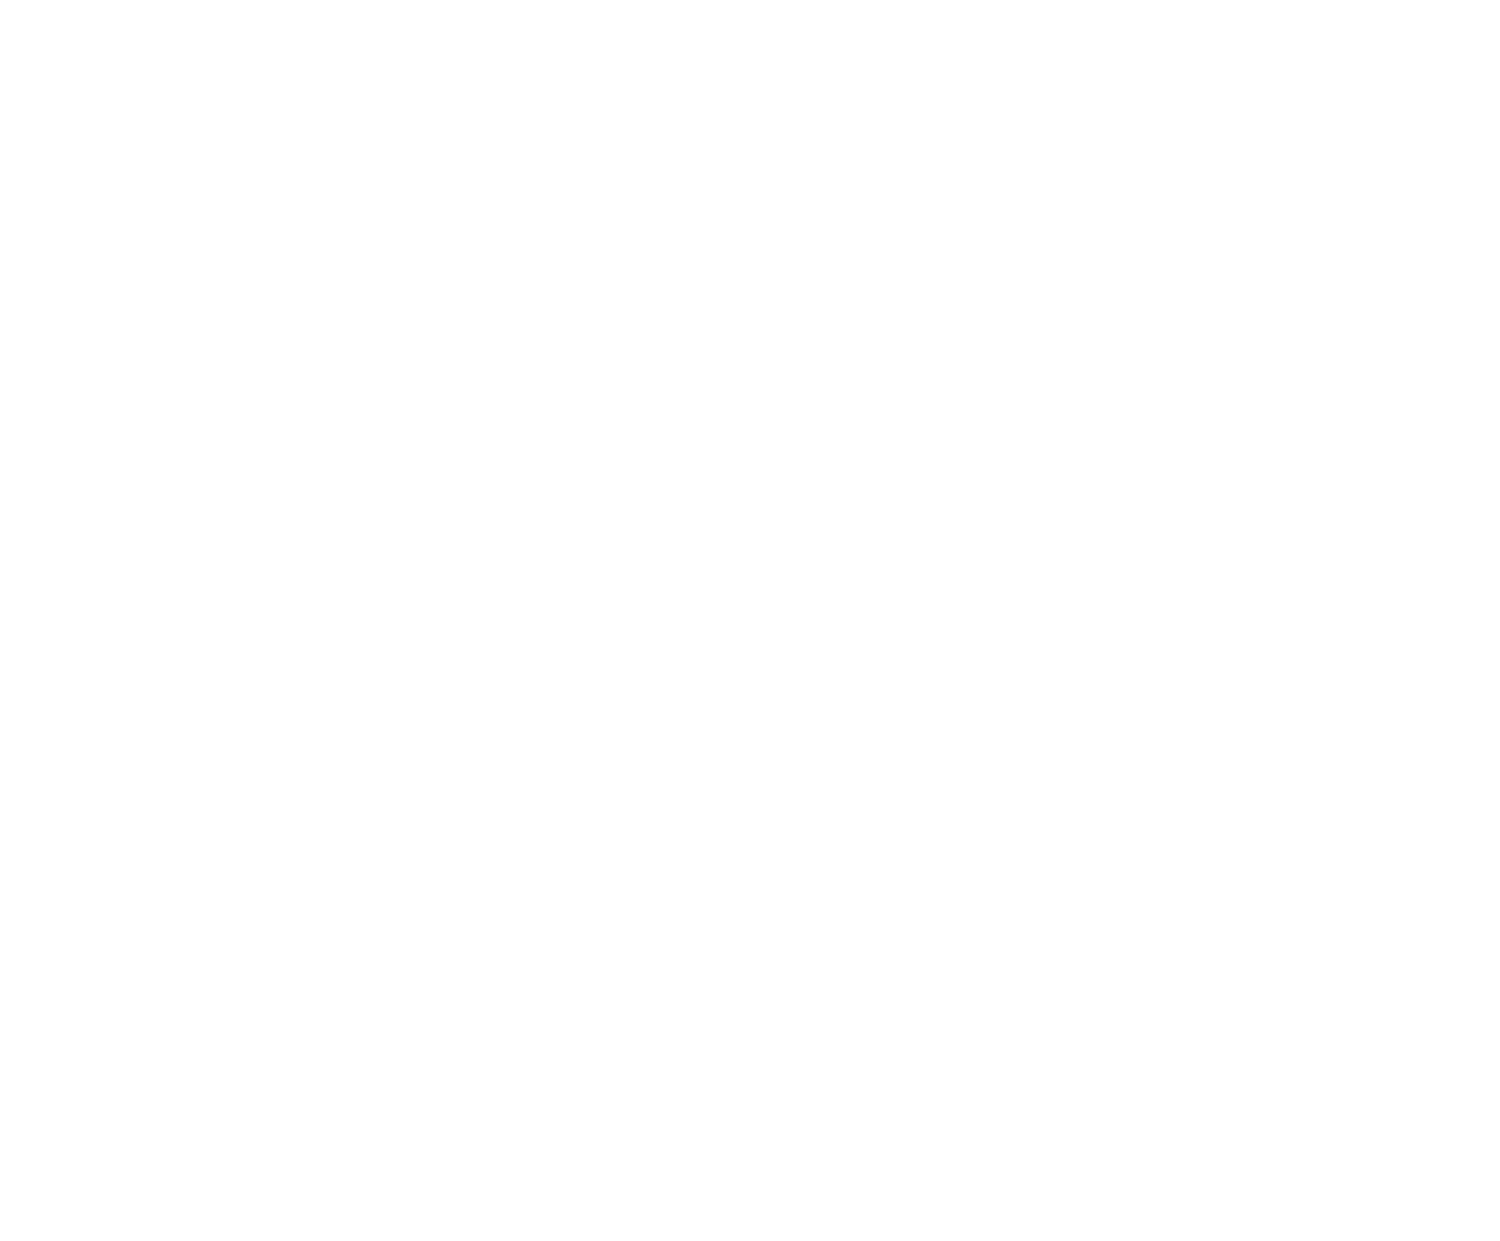 LITTLE PETER RABBIT